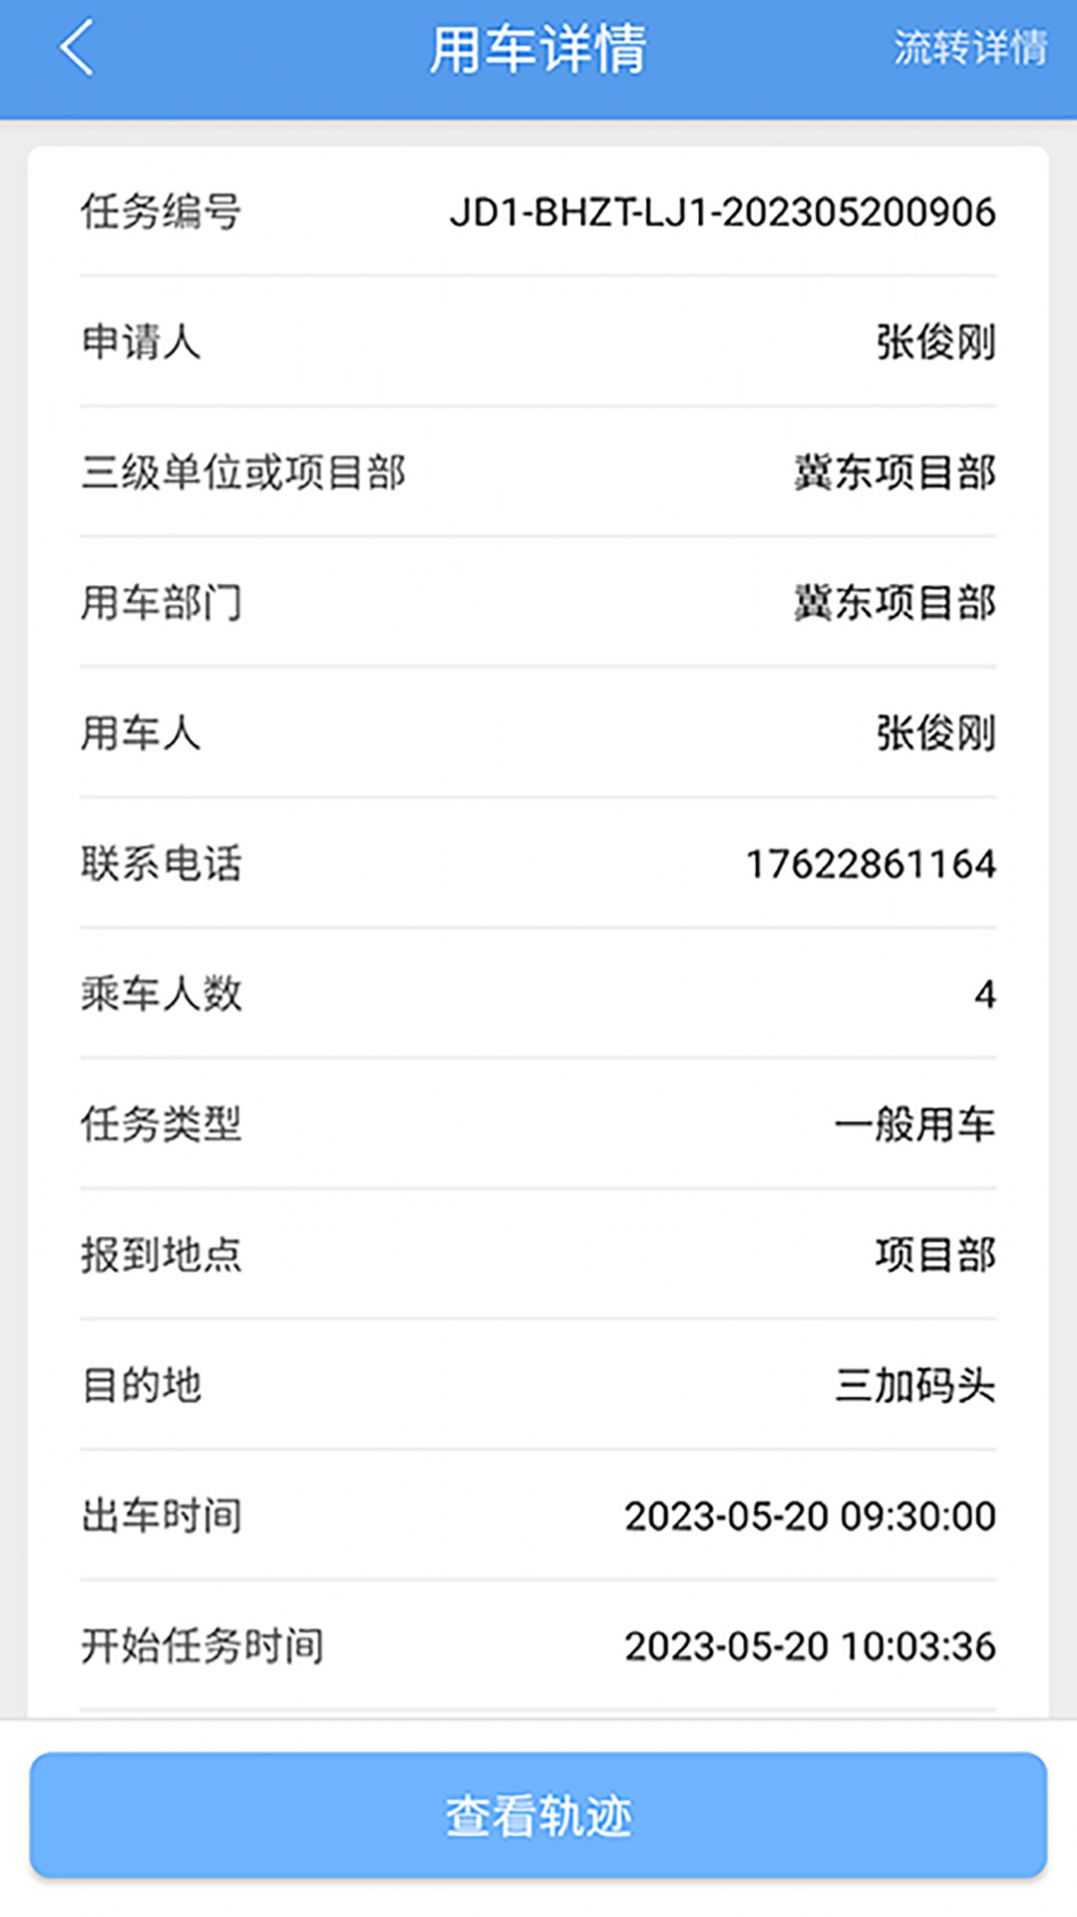 渤海生产用车app下载,渤海生产用车app最新版 v1.7.1